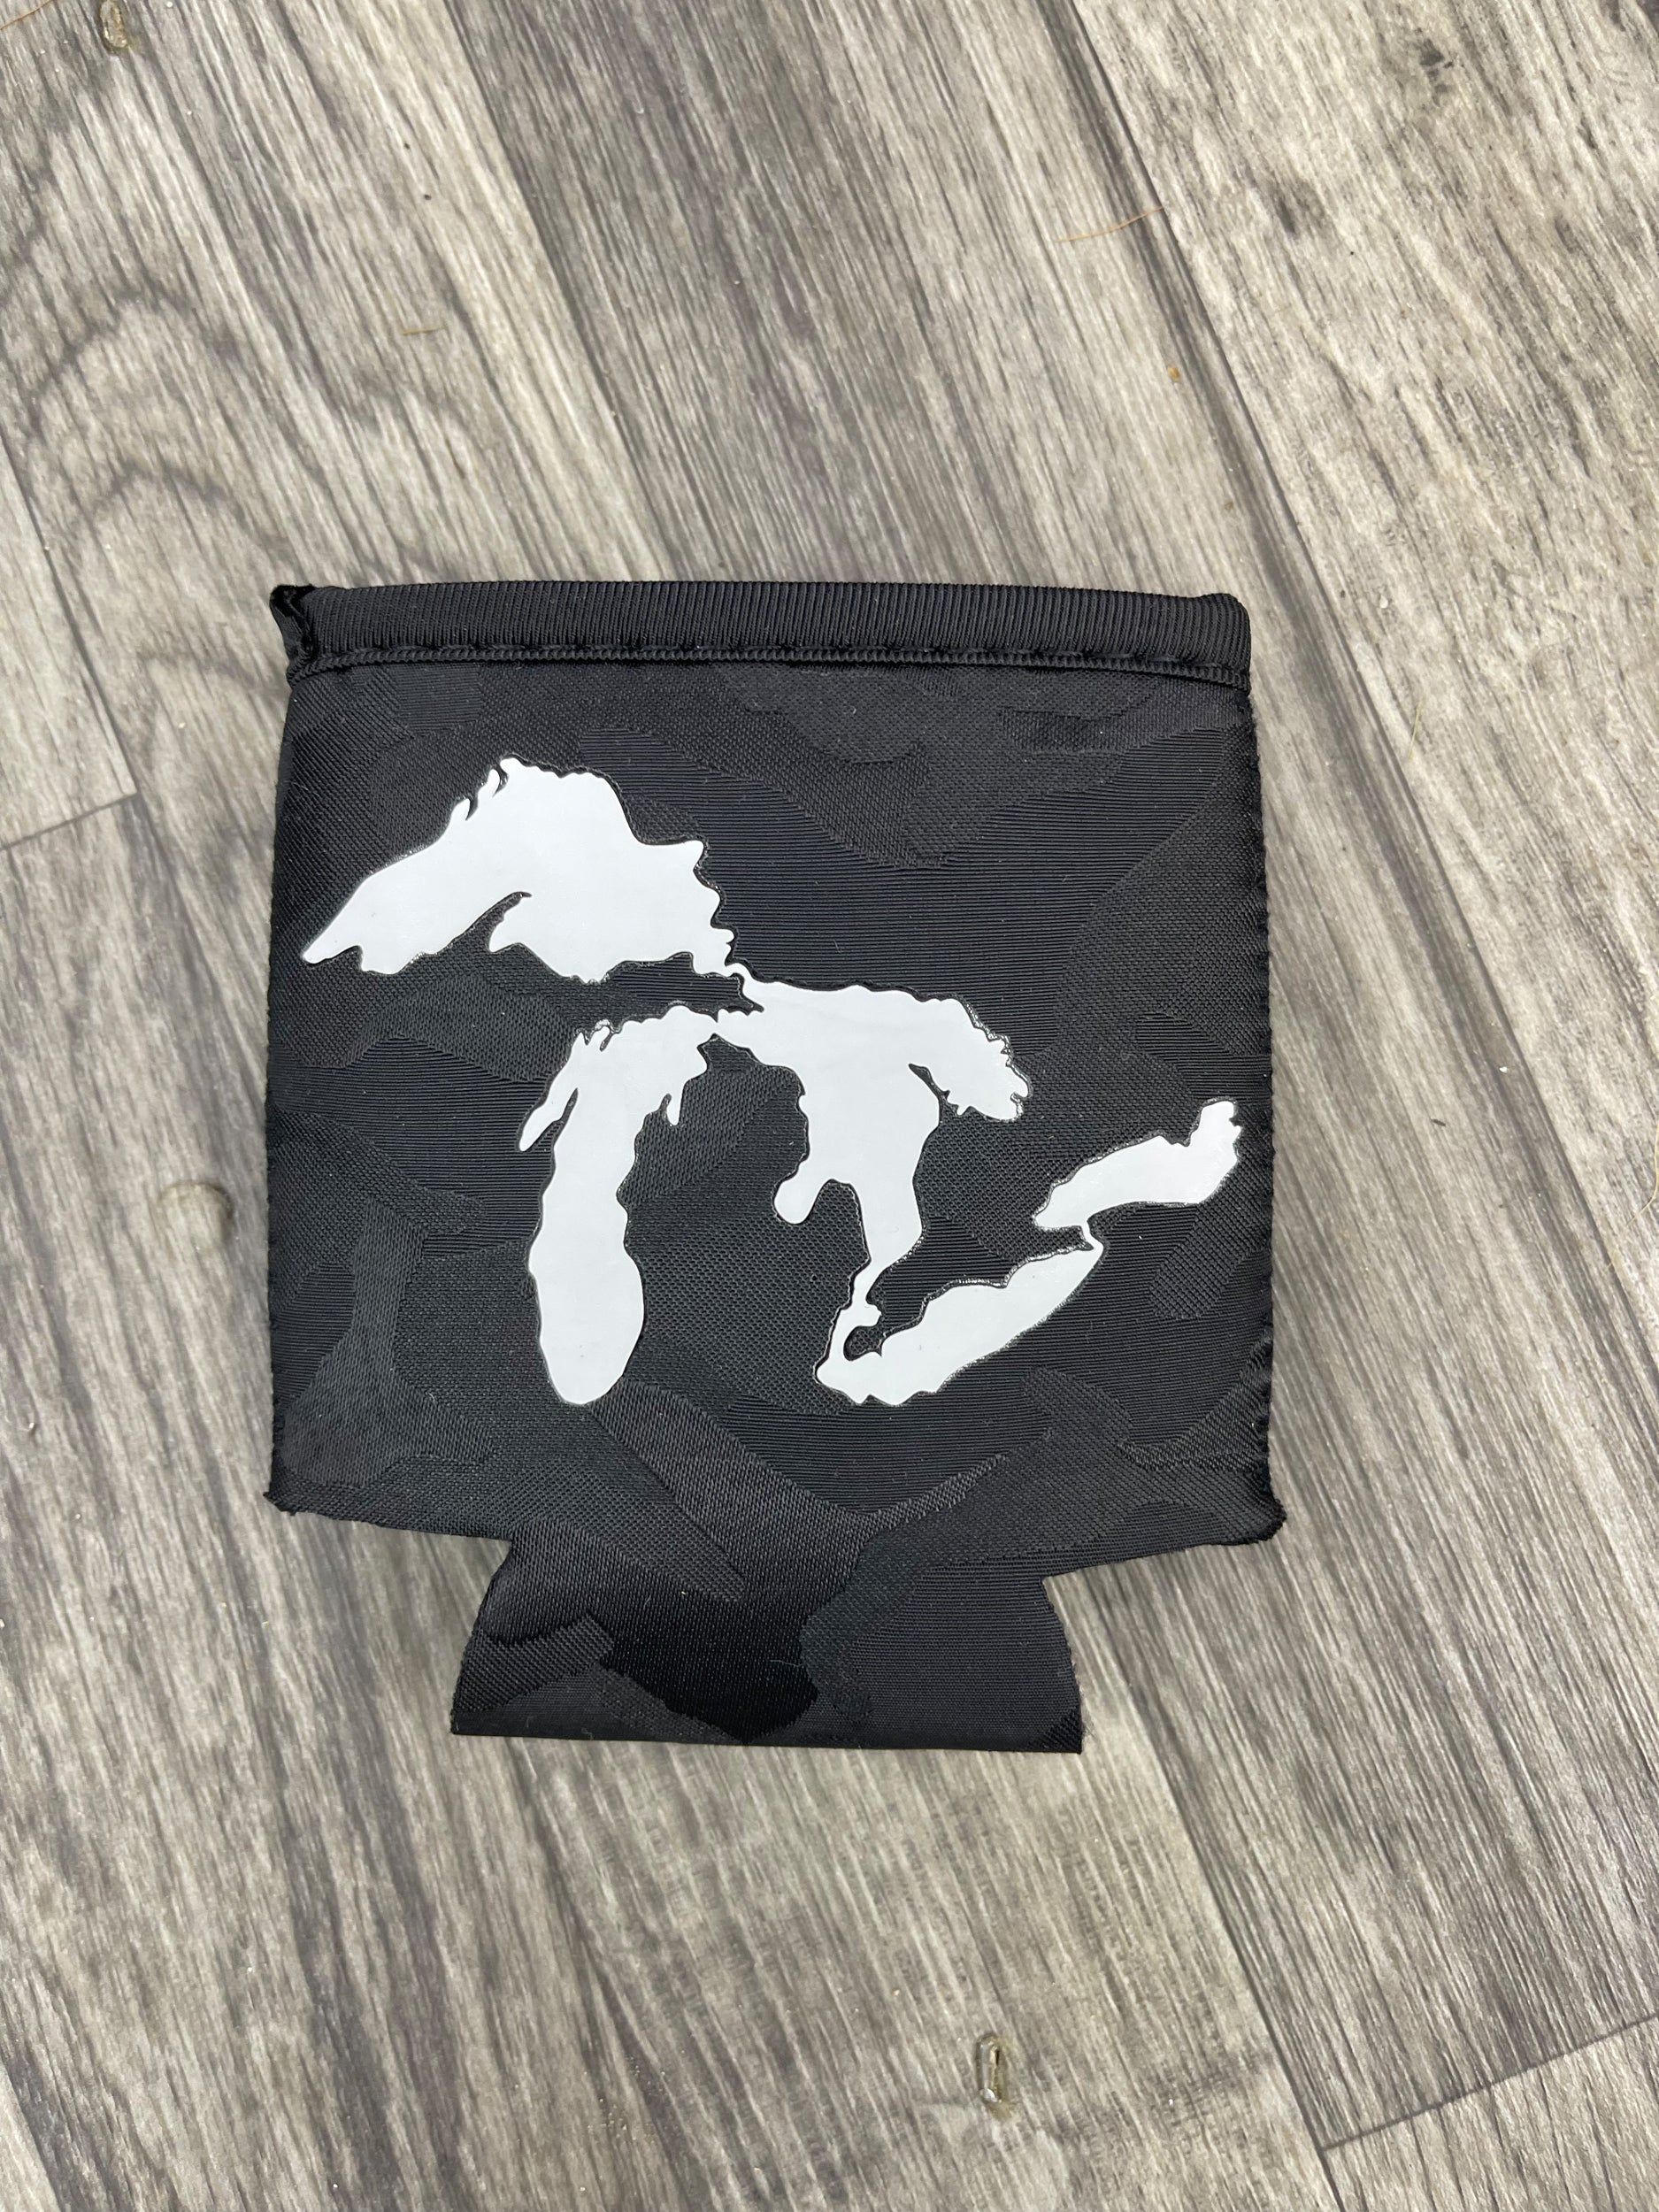 Great Lakes - Black Camo Koozie